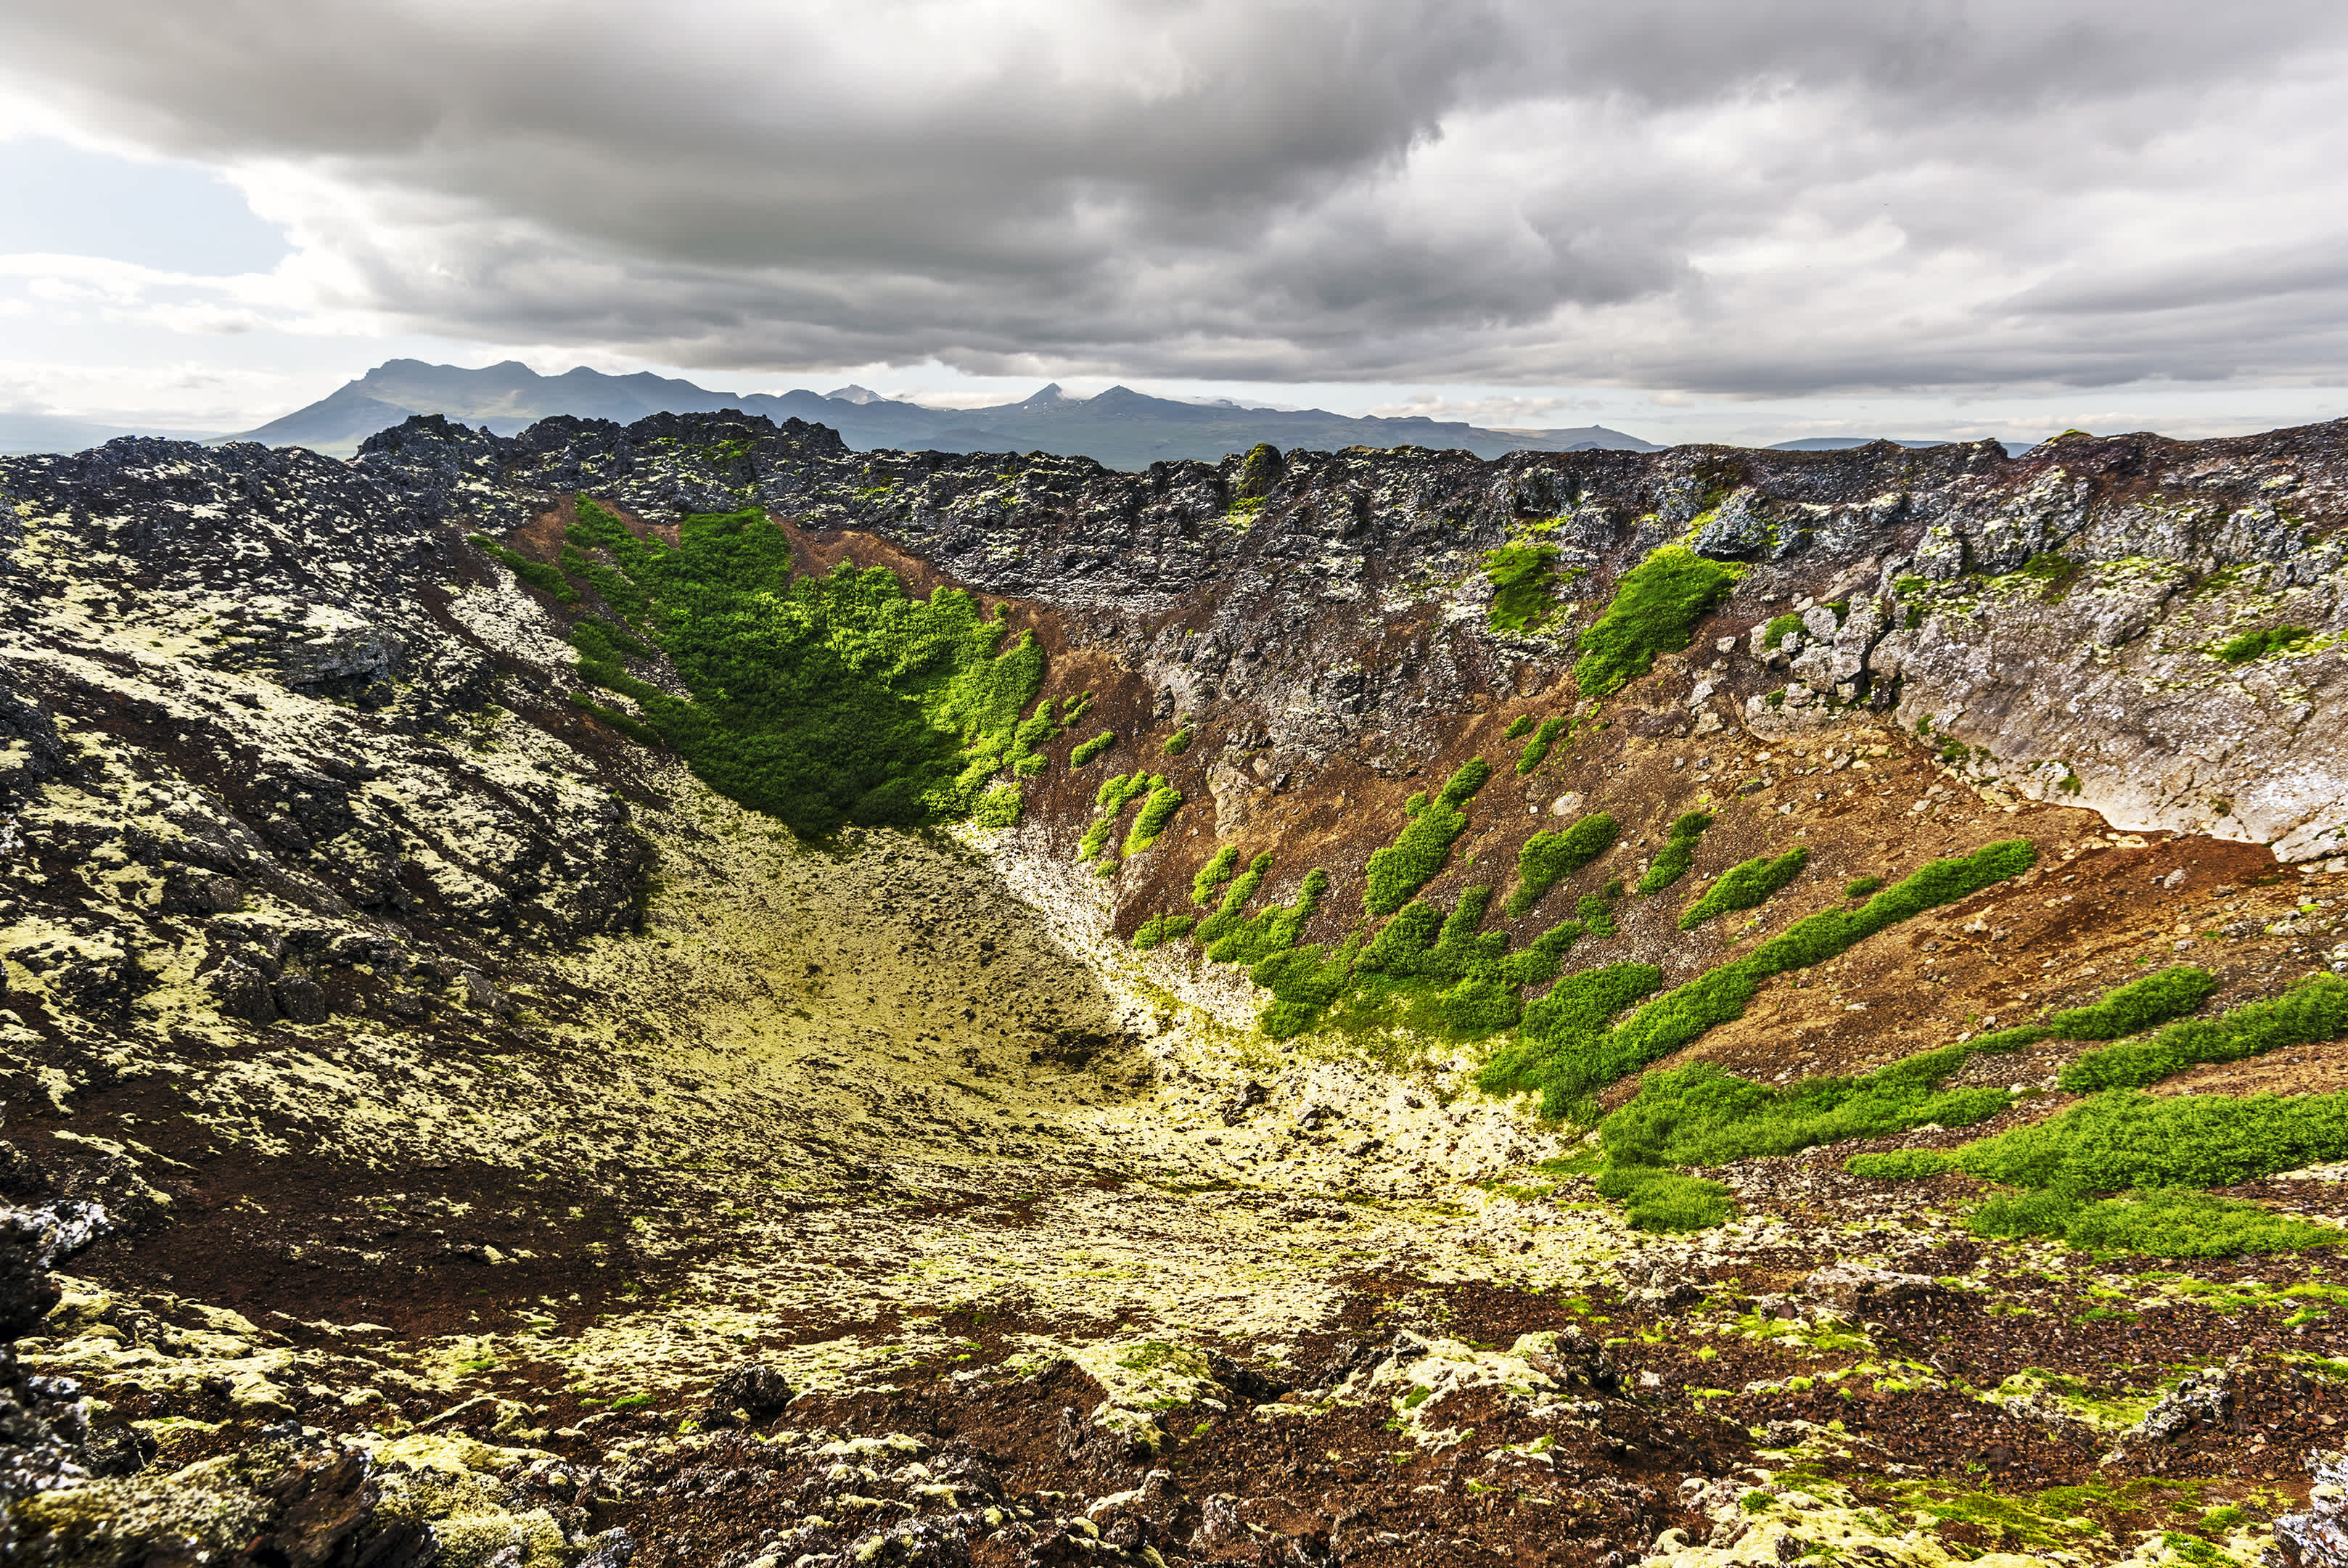 Vue de l'intérieur du cratère du volcan Eldborg dans la région du Vesturland en Islande.

